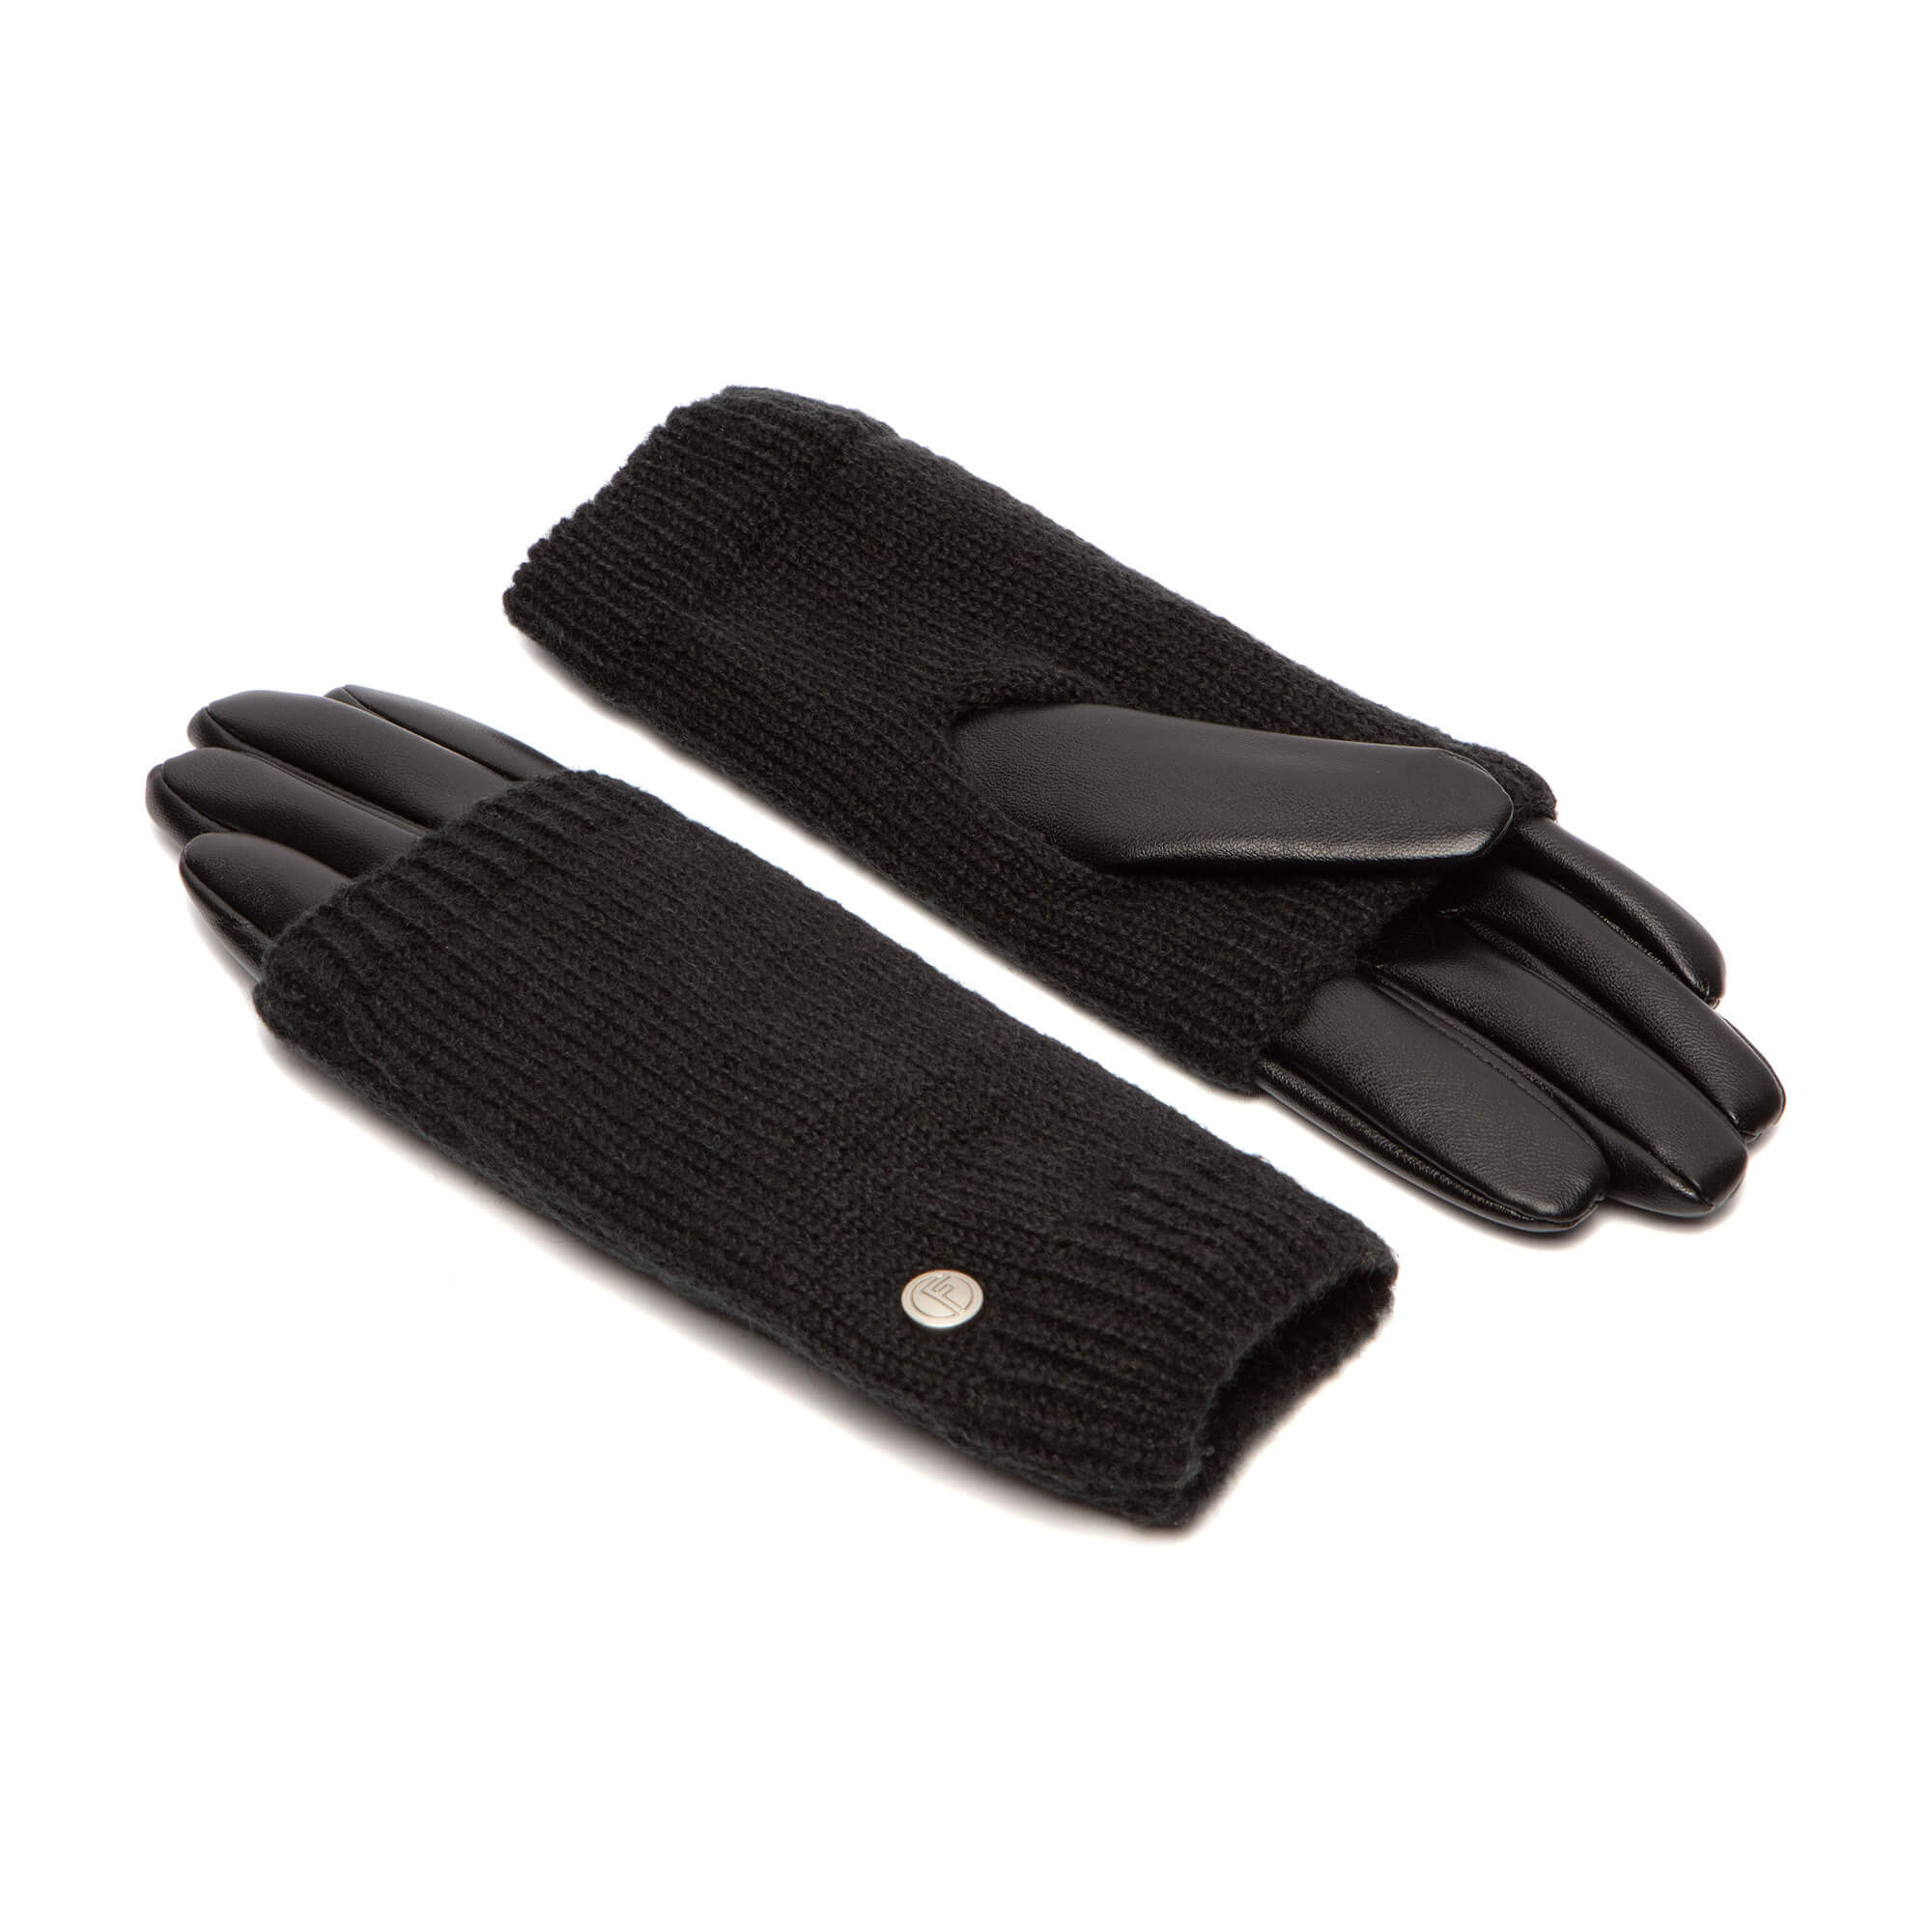 Accessoires Handschoenen & wanten Rijhandschoenen Vrouwen Vegan Lederen Full-finger Rijden Touchscreen Handschoenen 